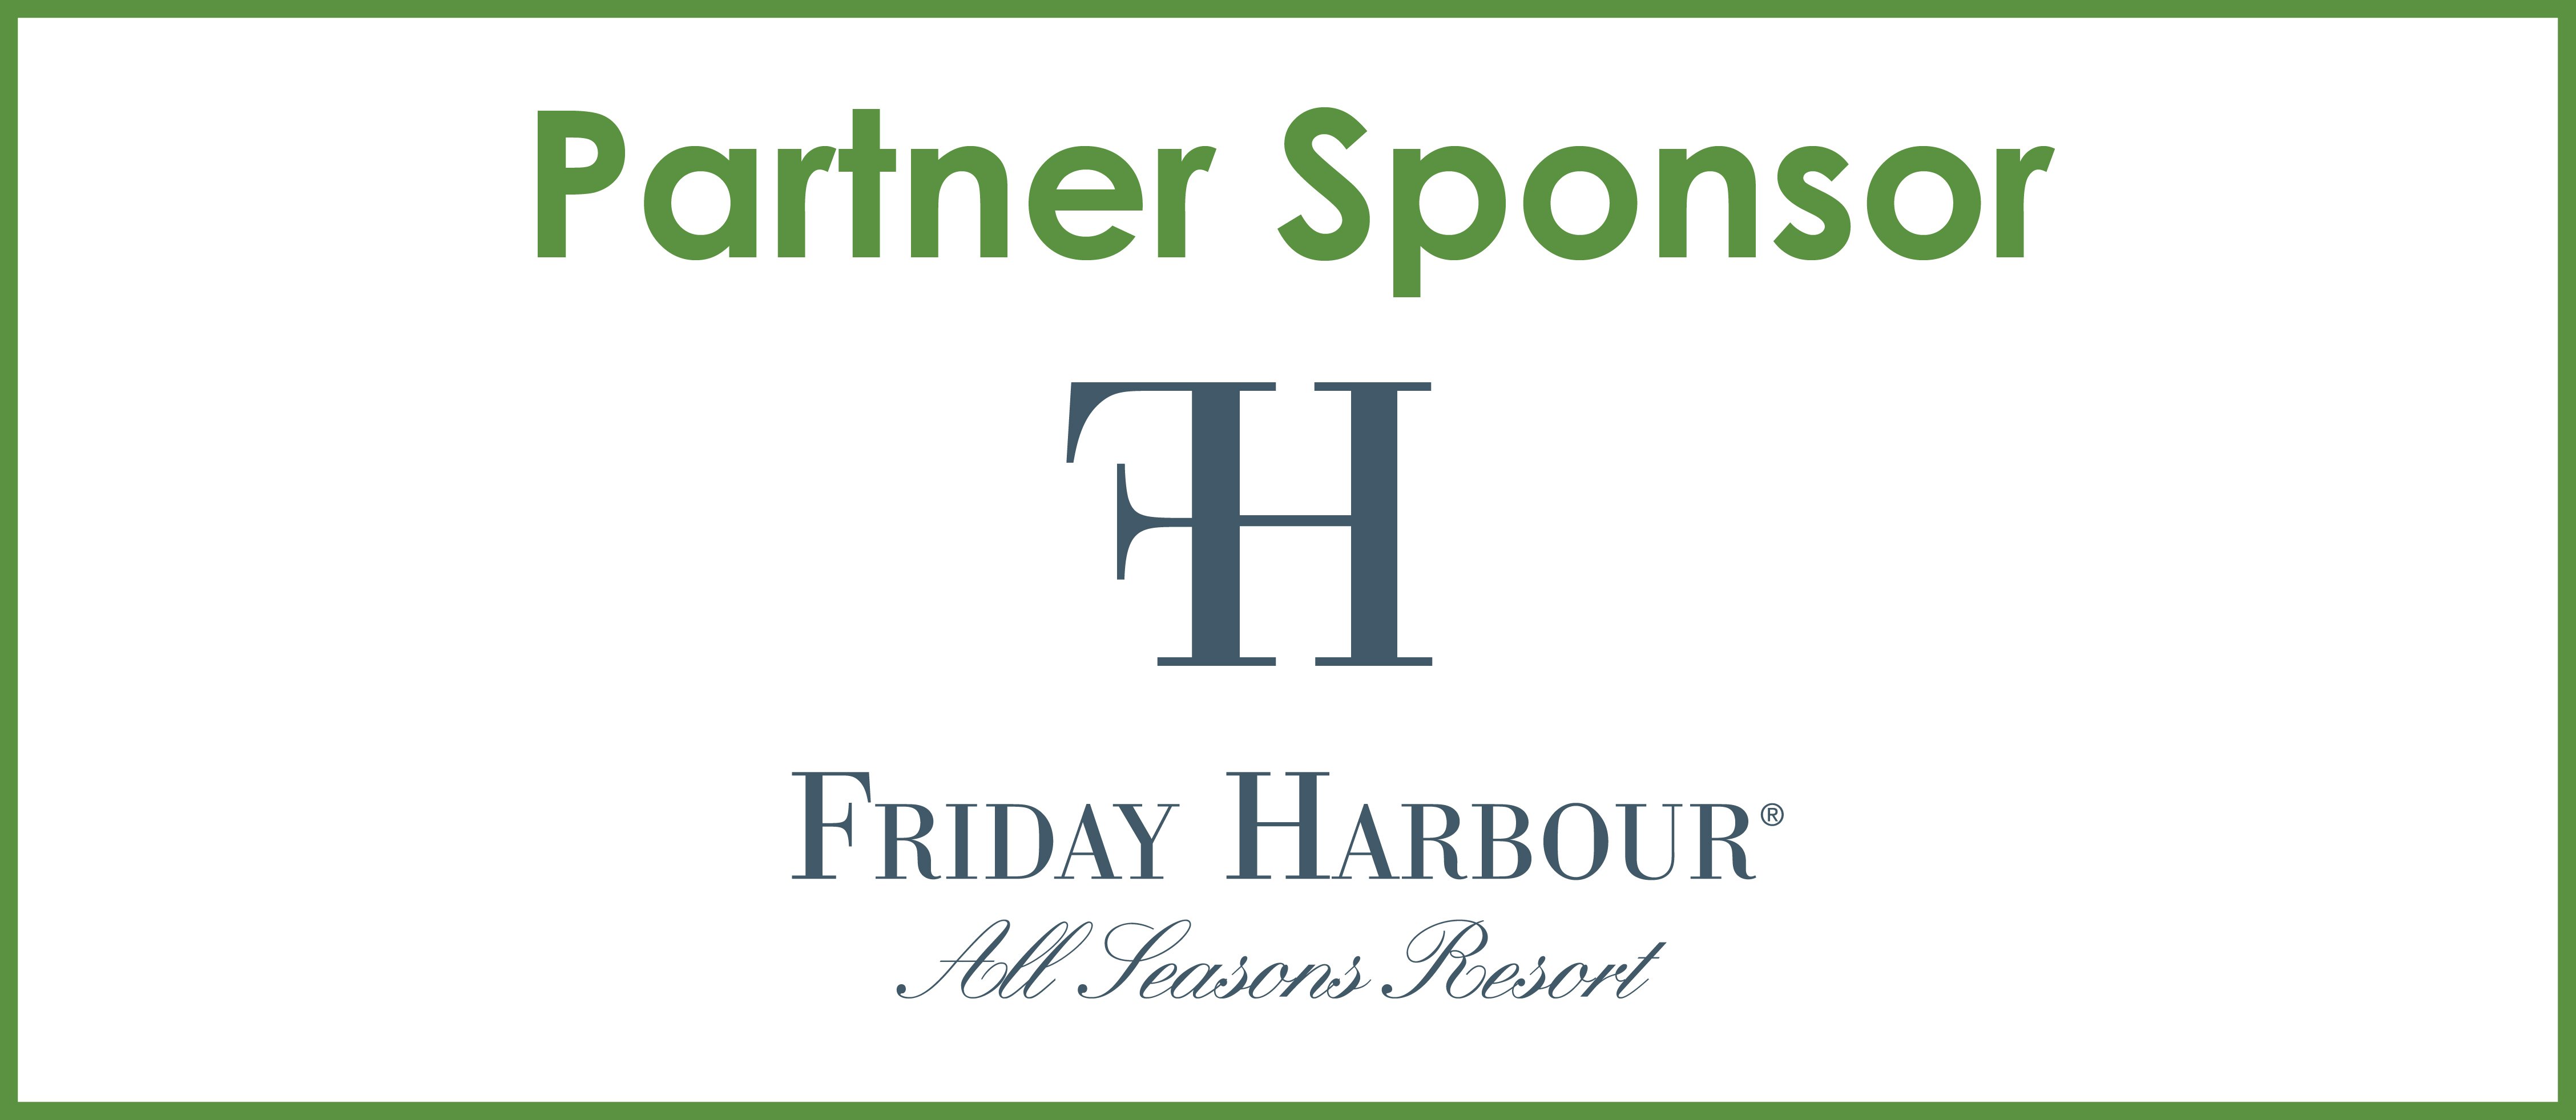 Partner sponsor logo